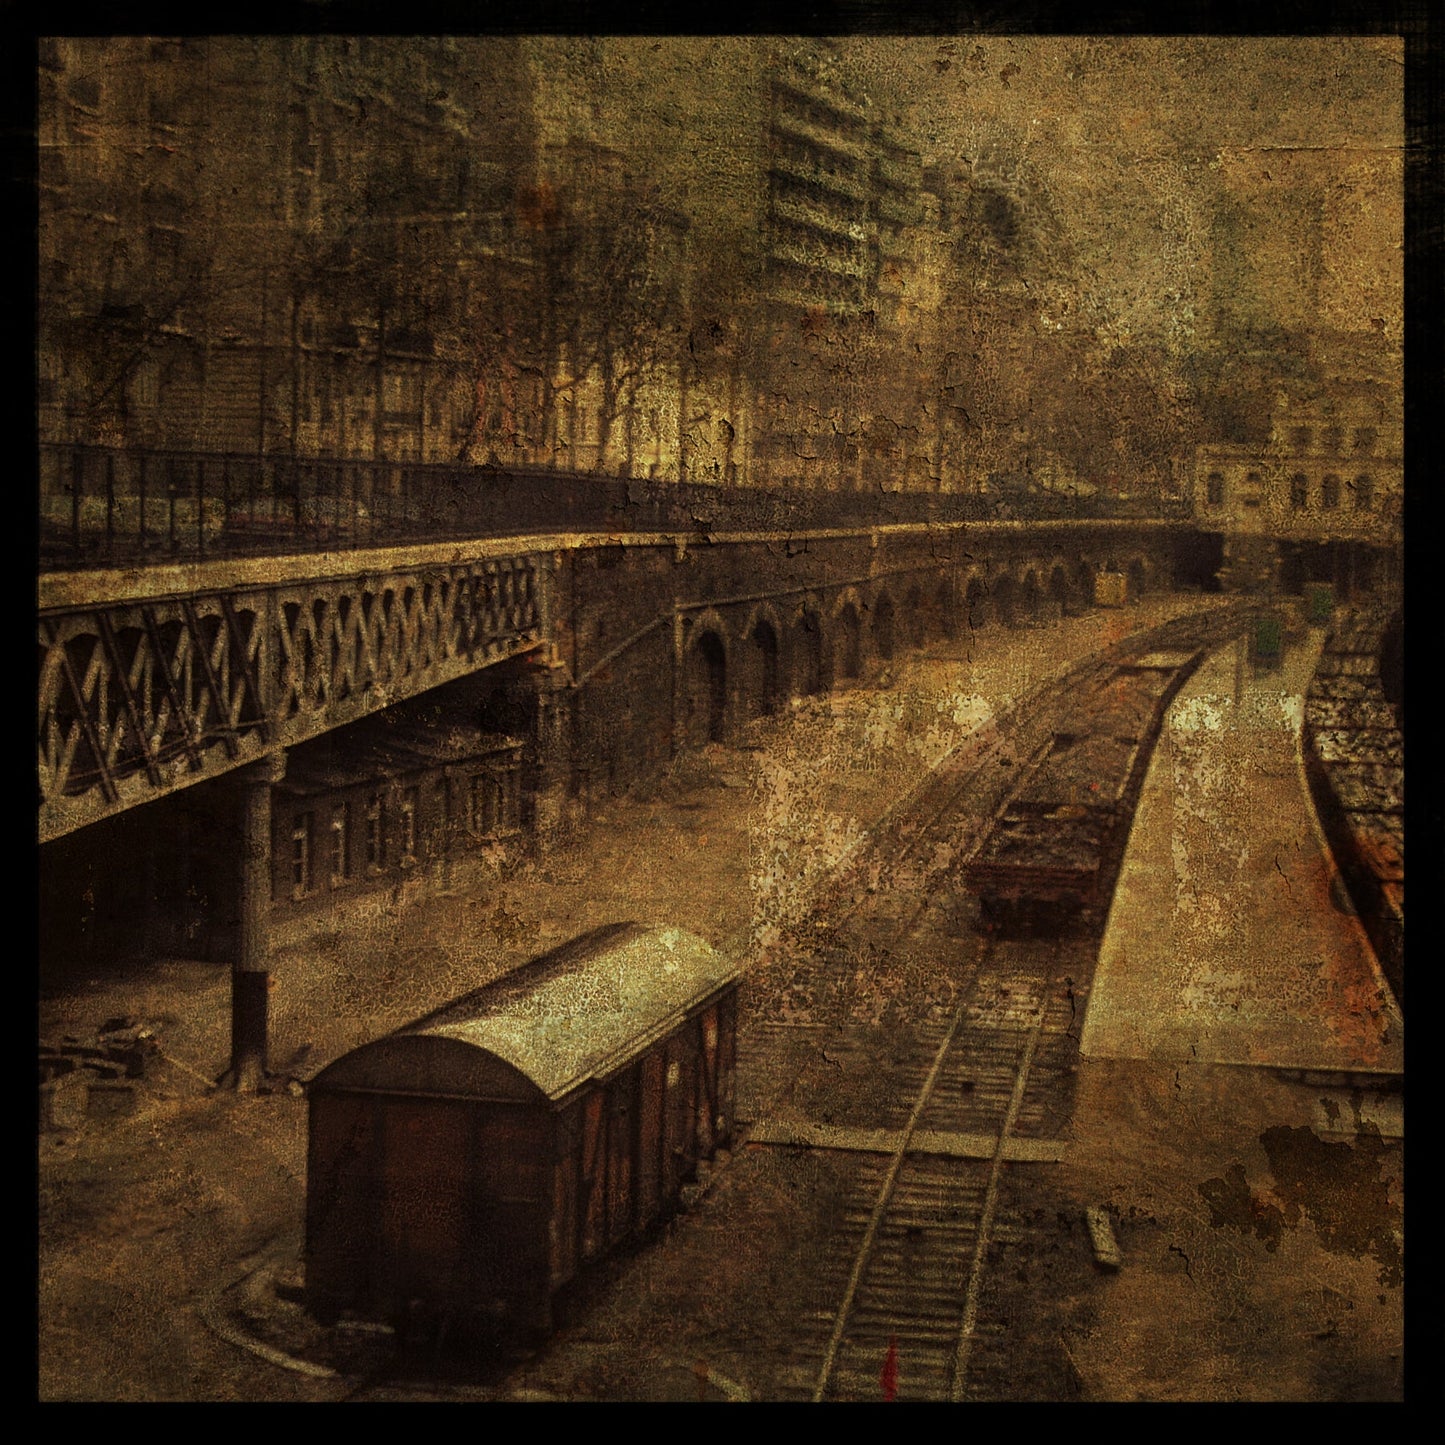 Paris Railroad Photograph